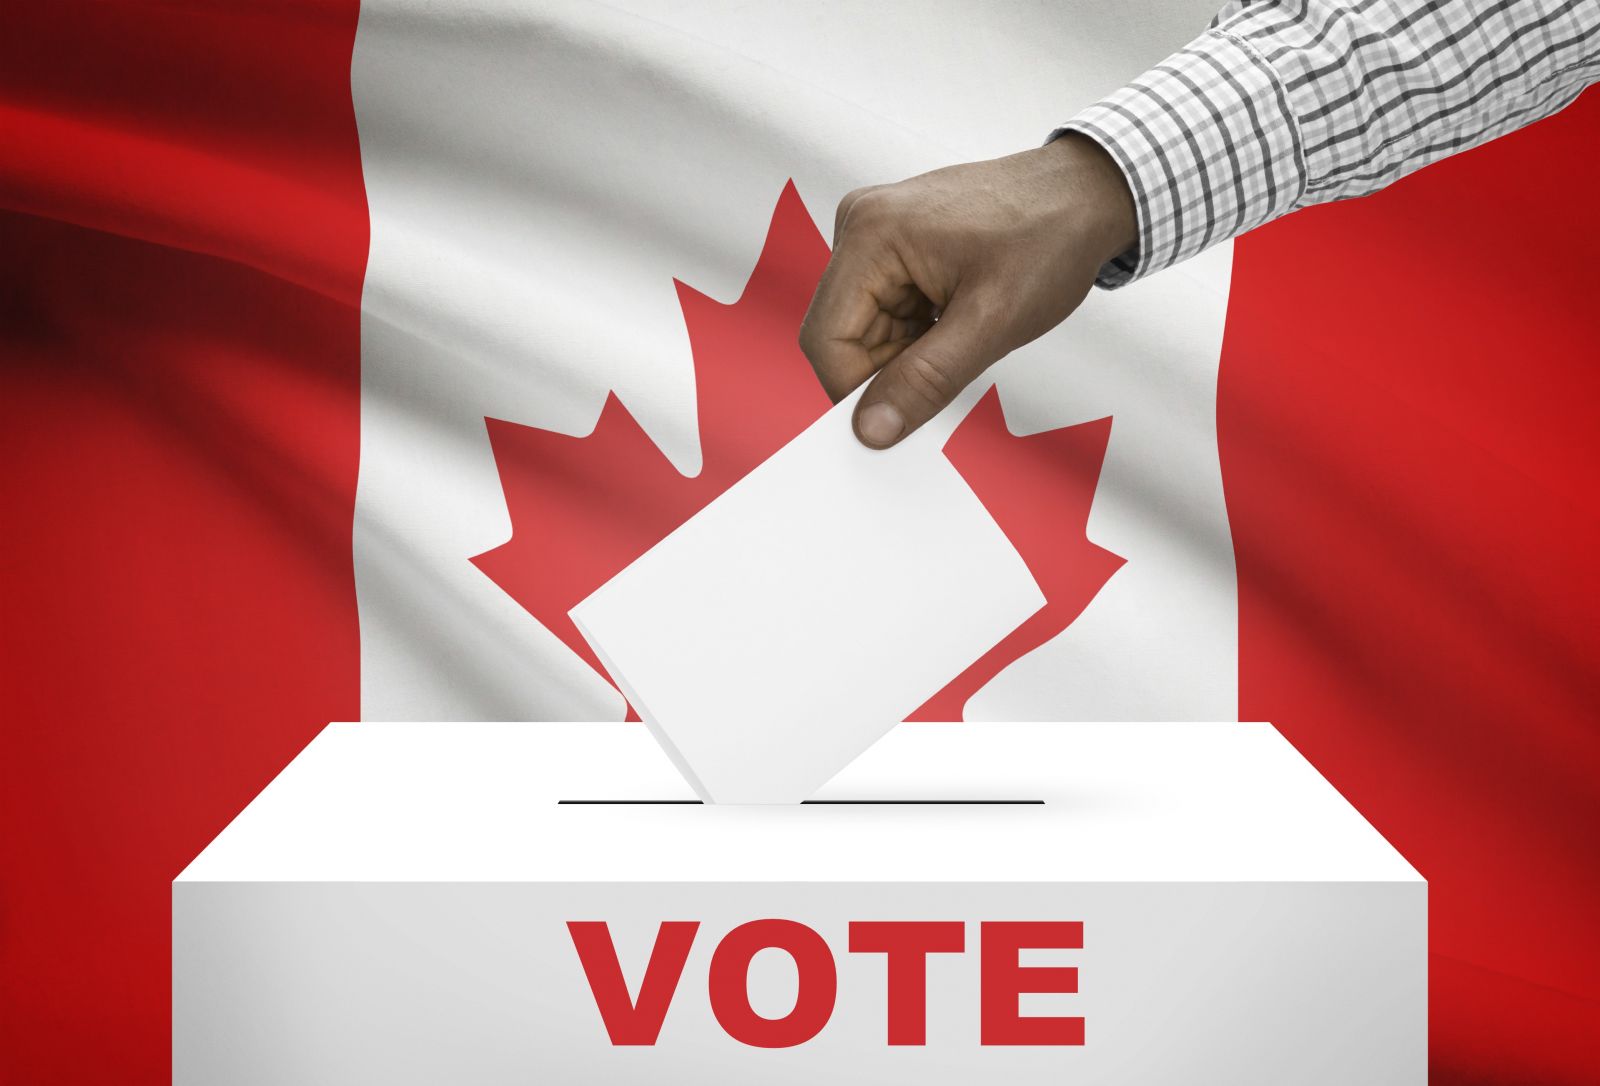 ¡Vote!, su voto cuenta hoy más que nunca. Reñidas elecciones de Canadá